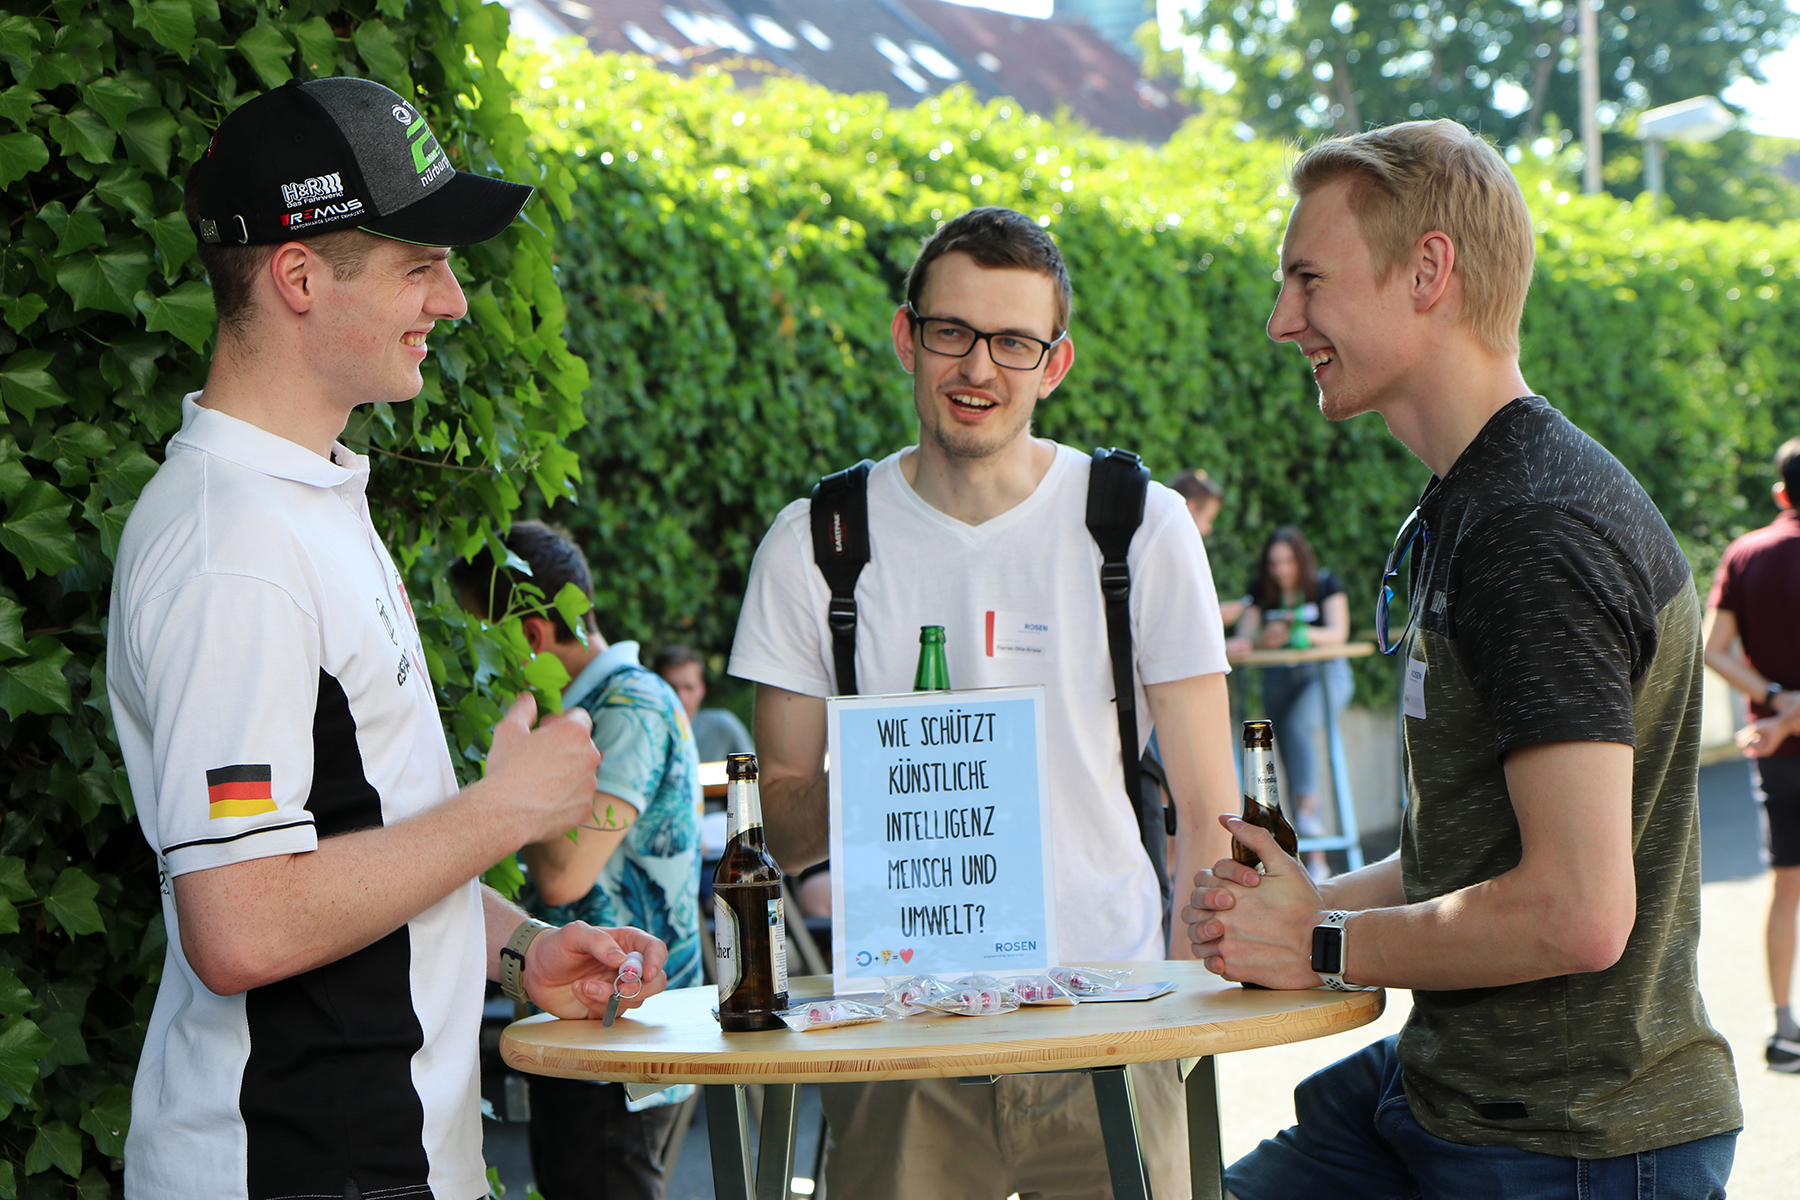 An unserem Standort in Osnabrück hat erneut das ROSEN Pizza Event stattgefunden.